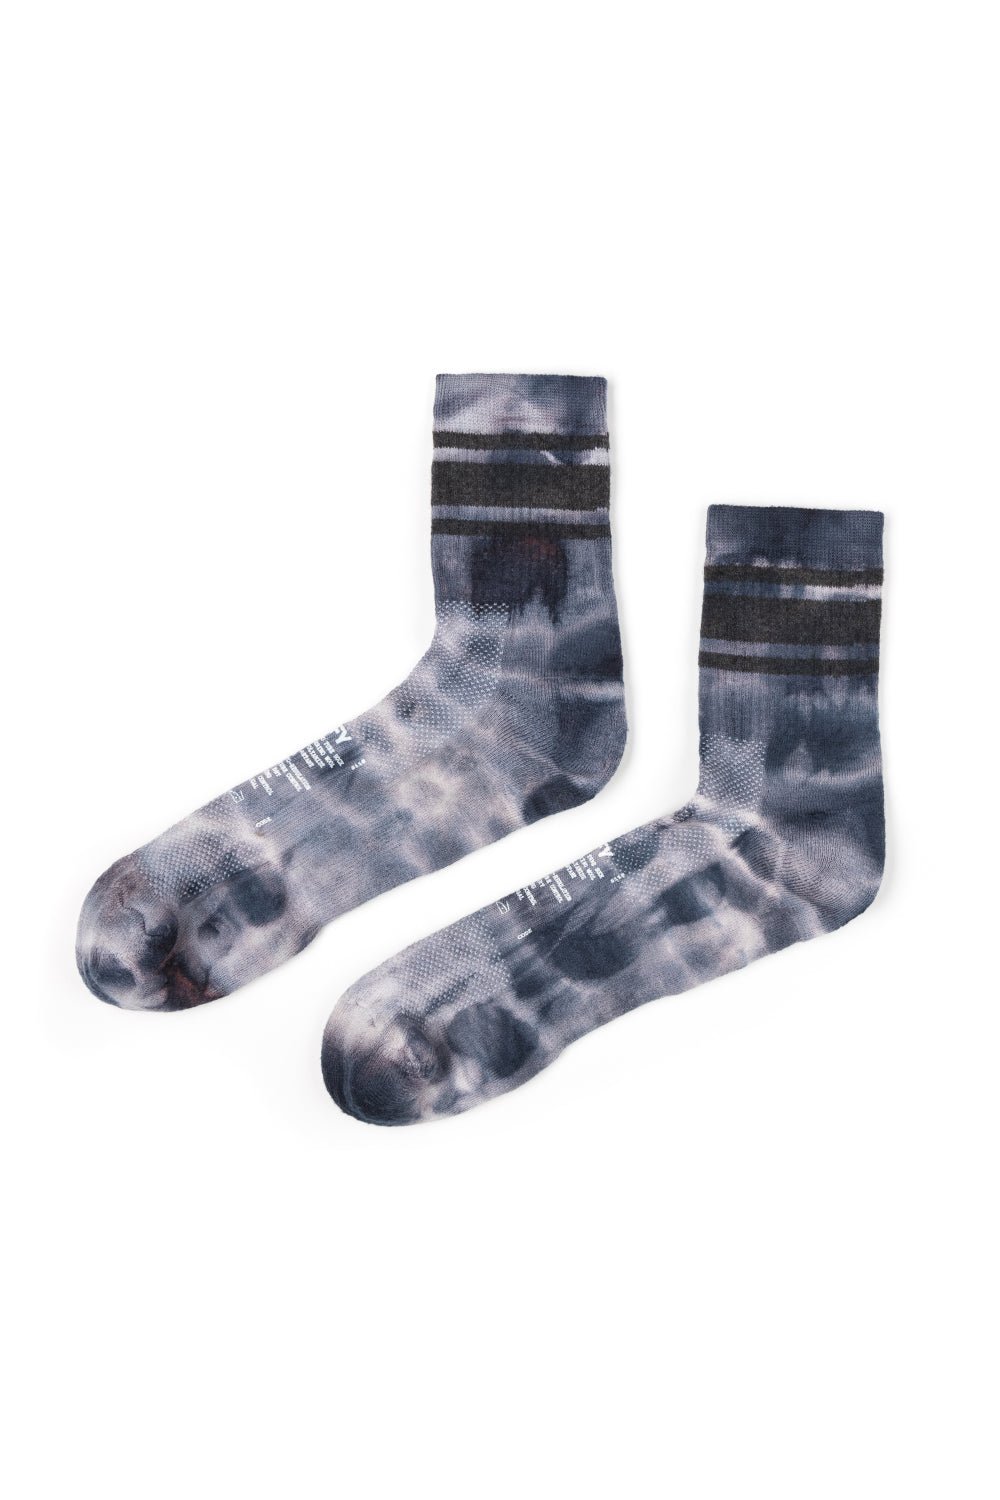 Satisfy Merino Tube Socks - Ink Tie-Dye | Coffee Outdoors